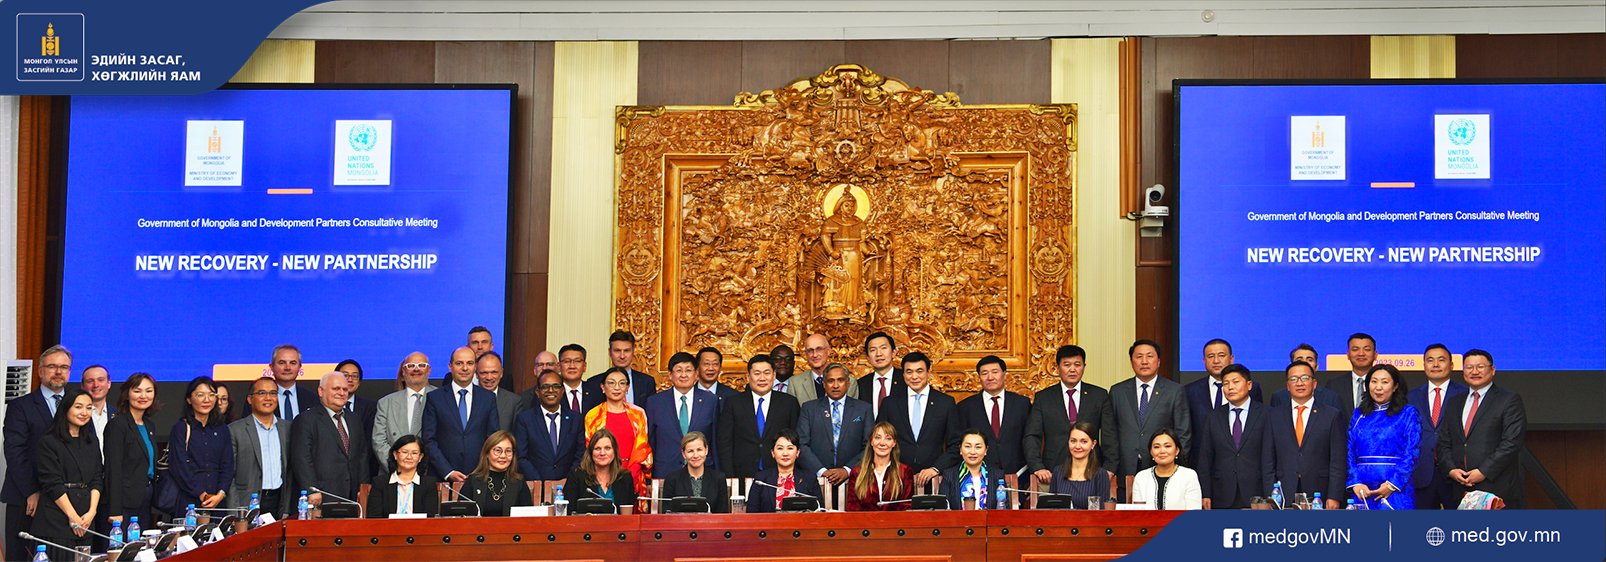 Монгол Улсын Ерөнхий сайд Л.Оюун-Эрдэнэ Засгийн газрын гишүүдийн хамт Хөгжлийн түнш олон улсын байгууллага, элчин сайдын яамдын төлөөллүүдтэй зөвлөлдөх уулзалт хийлээ.